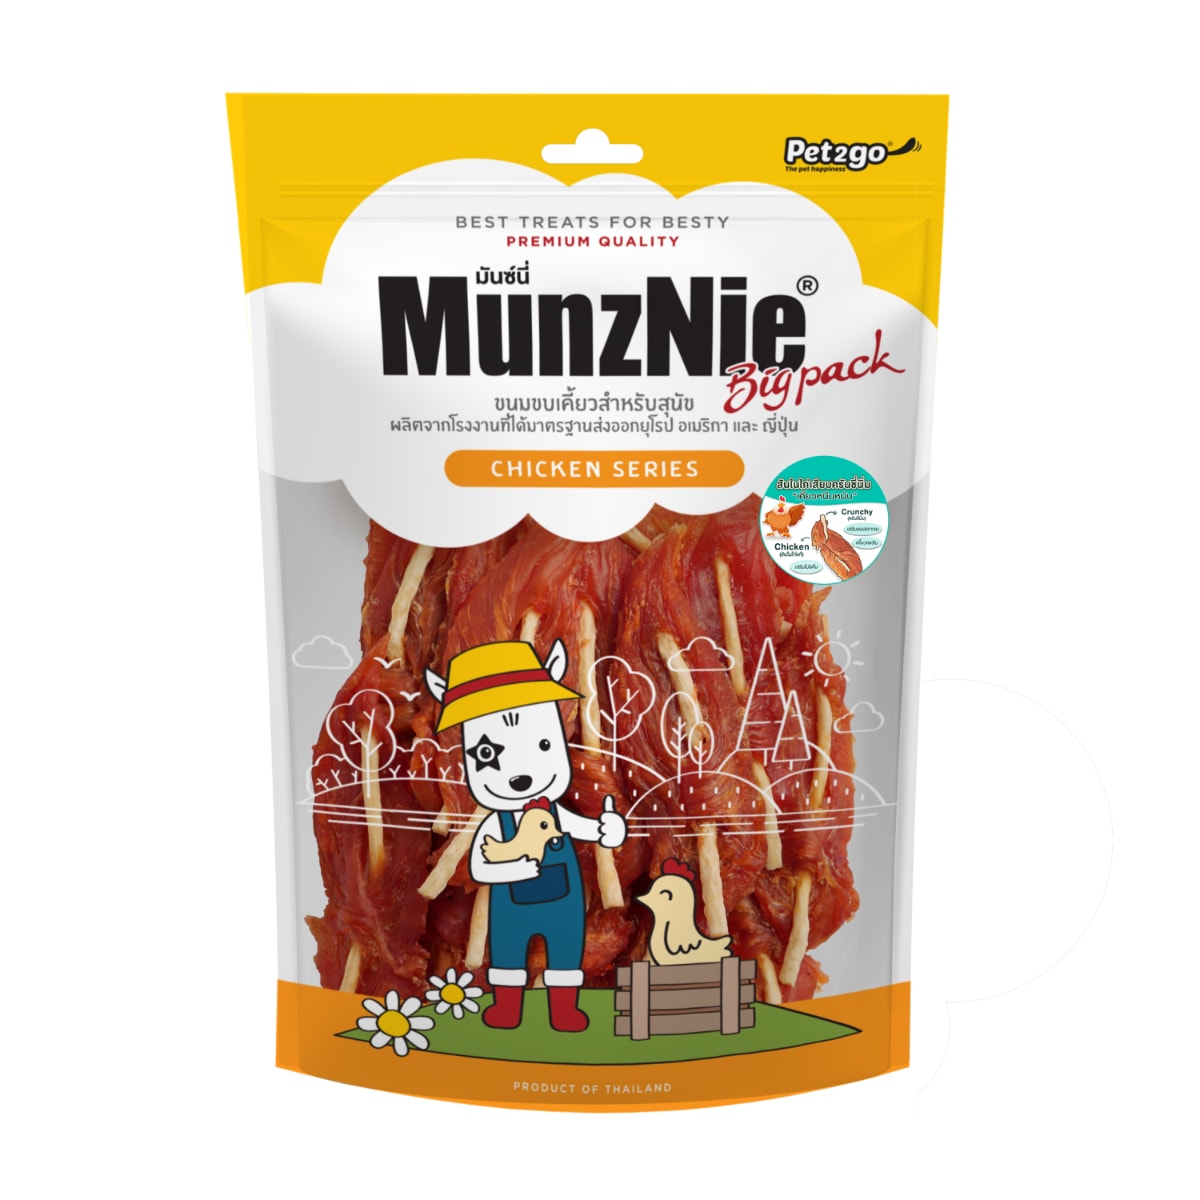 Munznie มันซ์นี่ ขนมสุนัขสันในไก่เสียบครั้นชี่นิ่ม สำหรับสุนัขสายพันธุ์กลาง 400 g